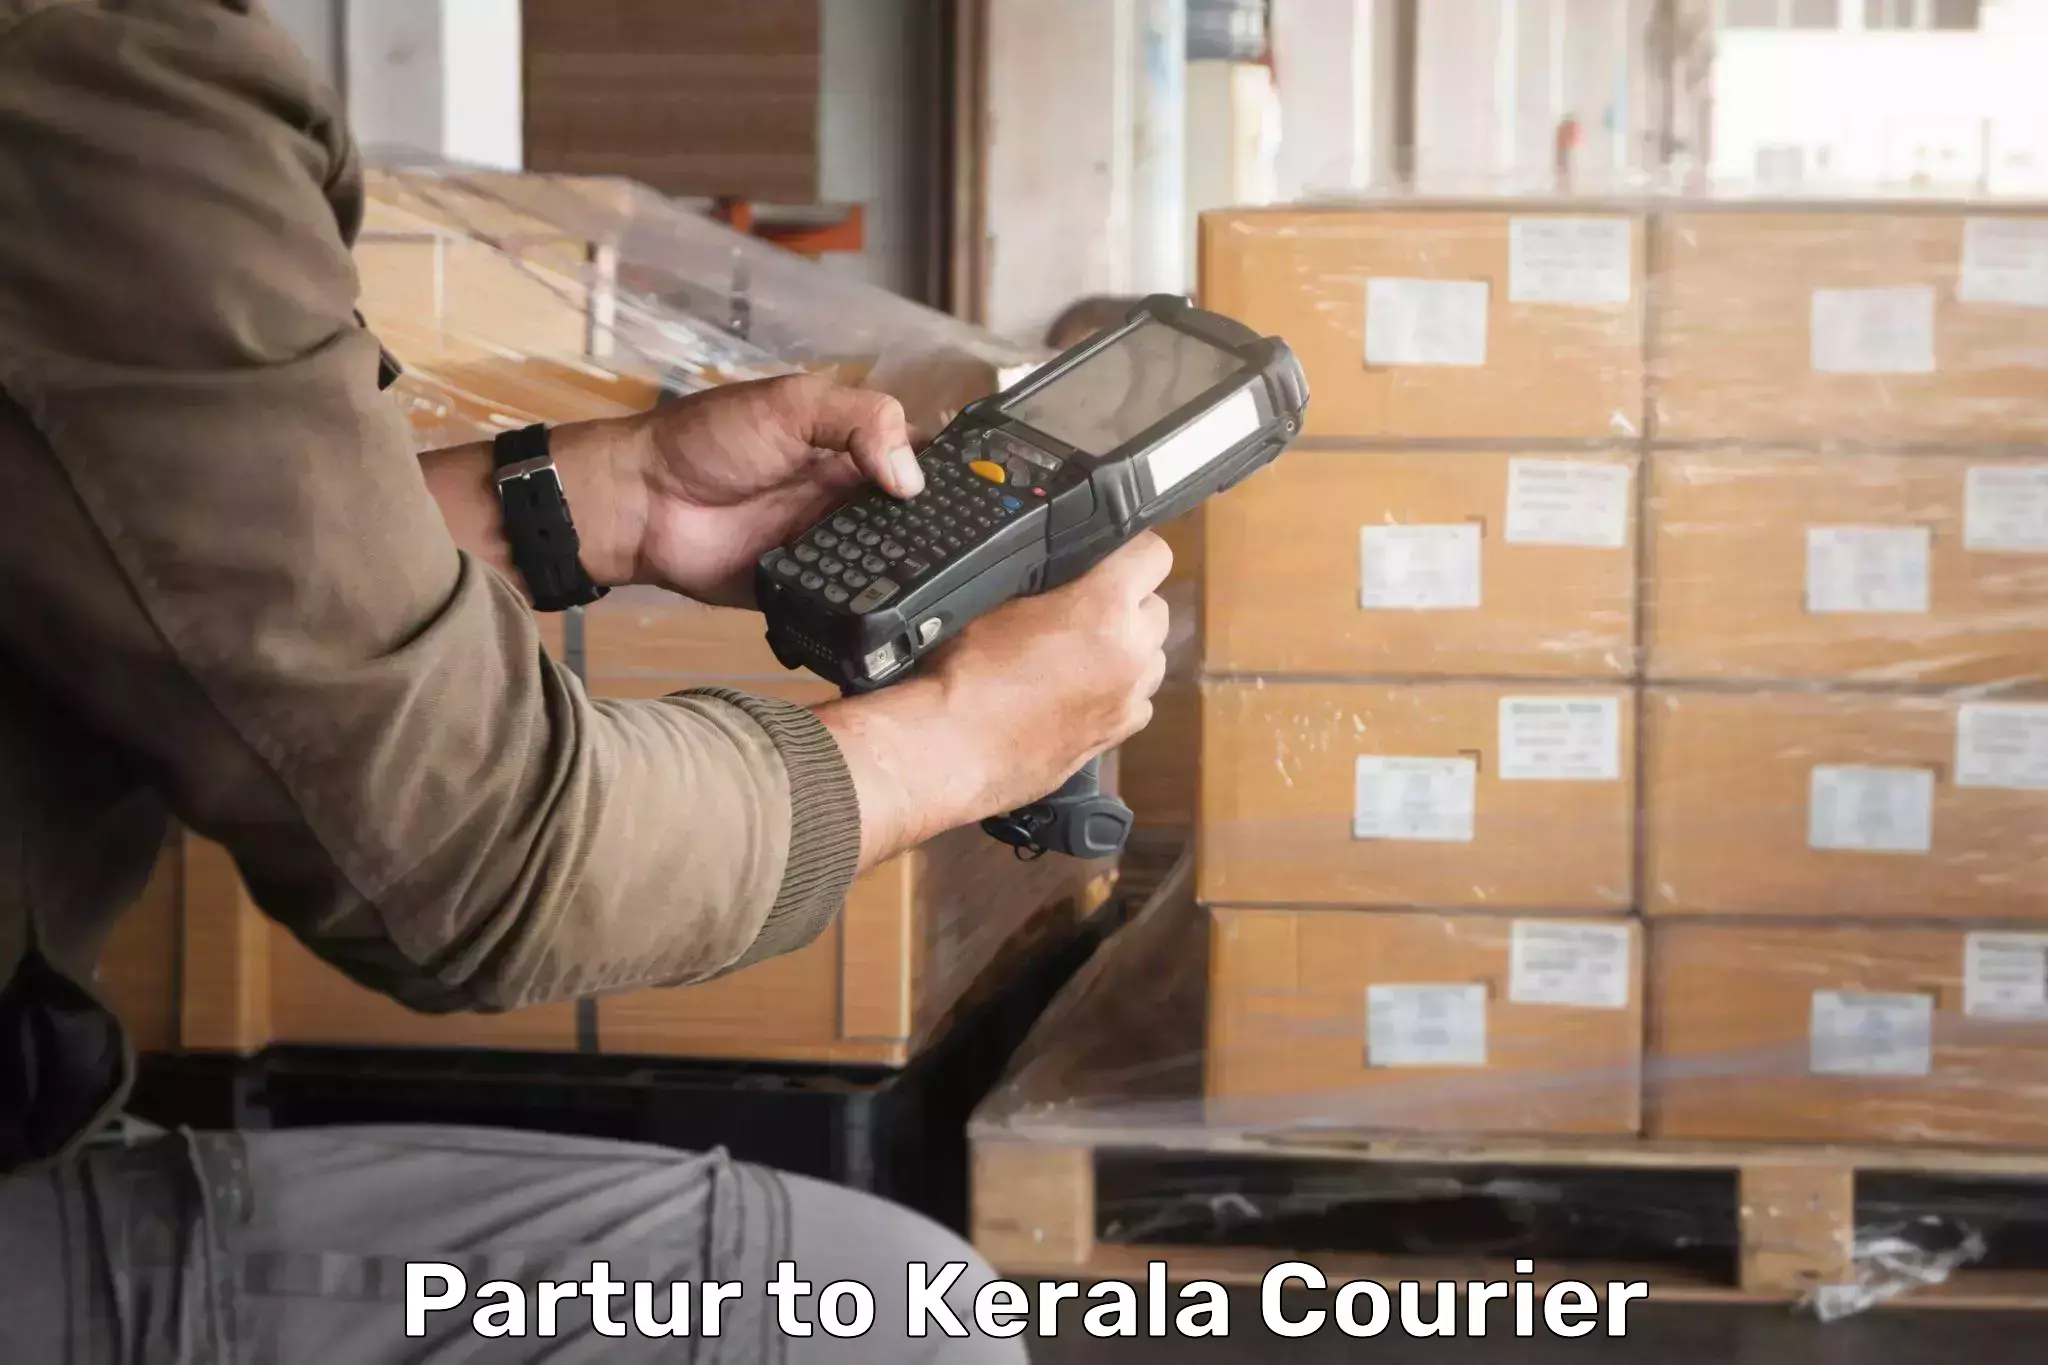 Large package courier Partur to Sreekandapuram